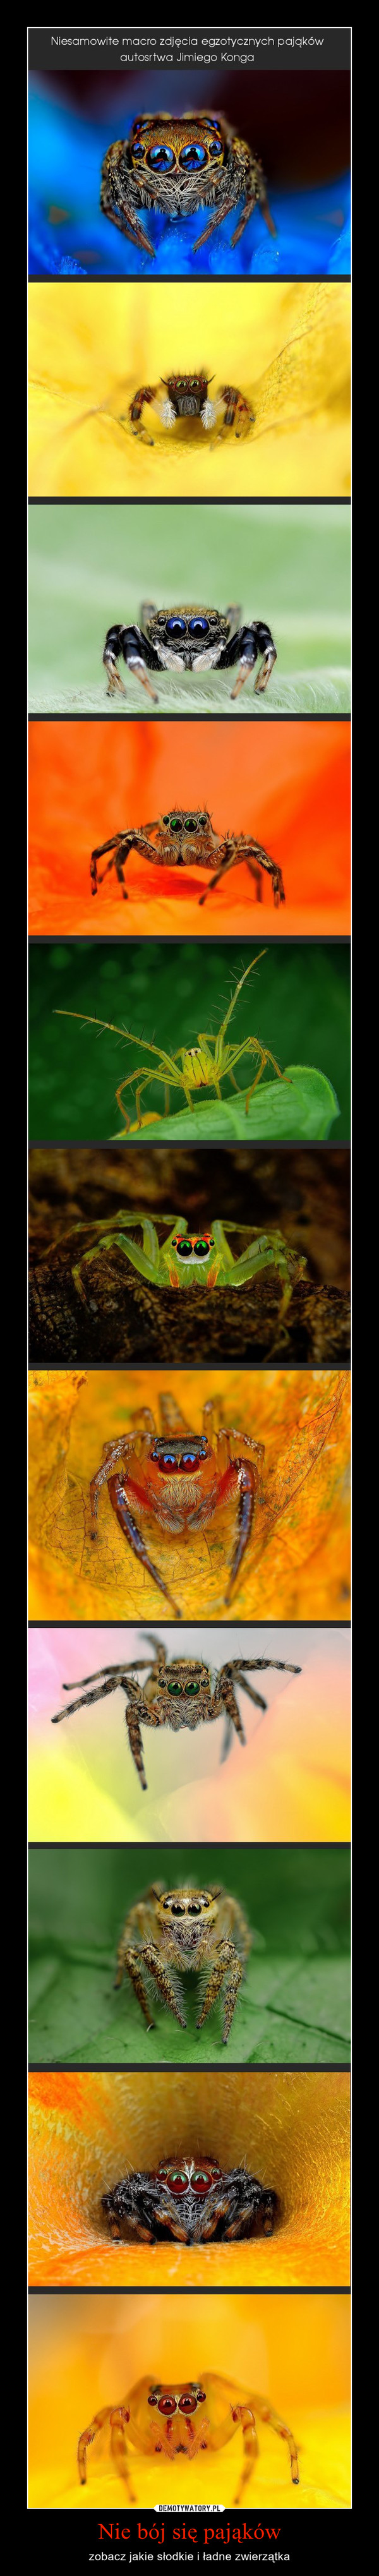 Nie bój się pająków – zobacz jakie słodkie i ładne zwierzątka 